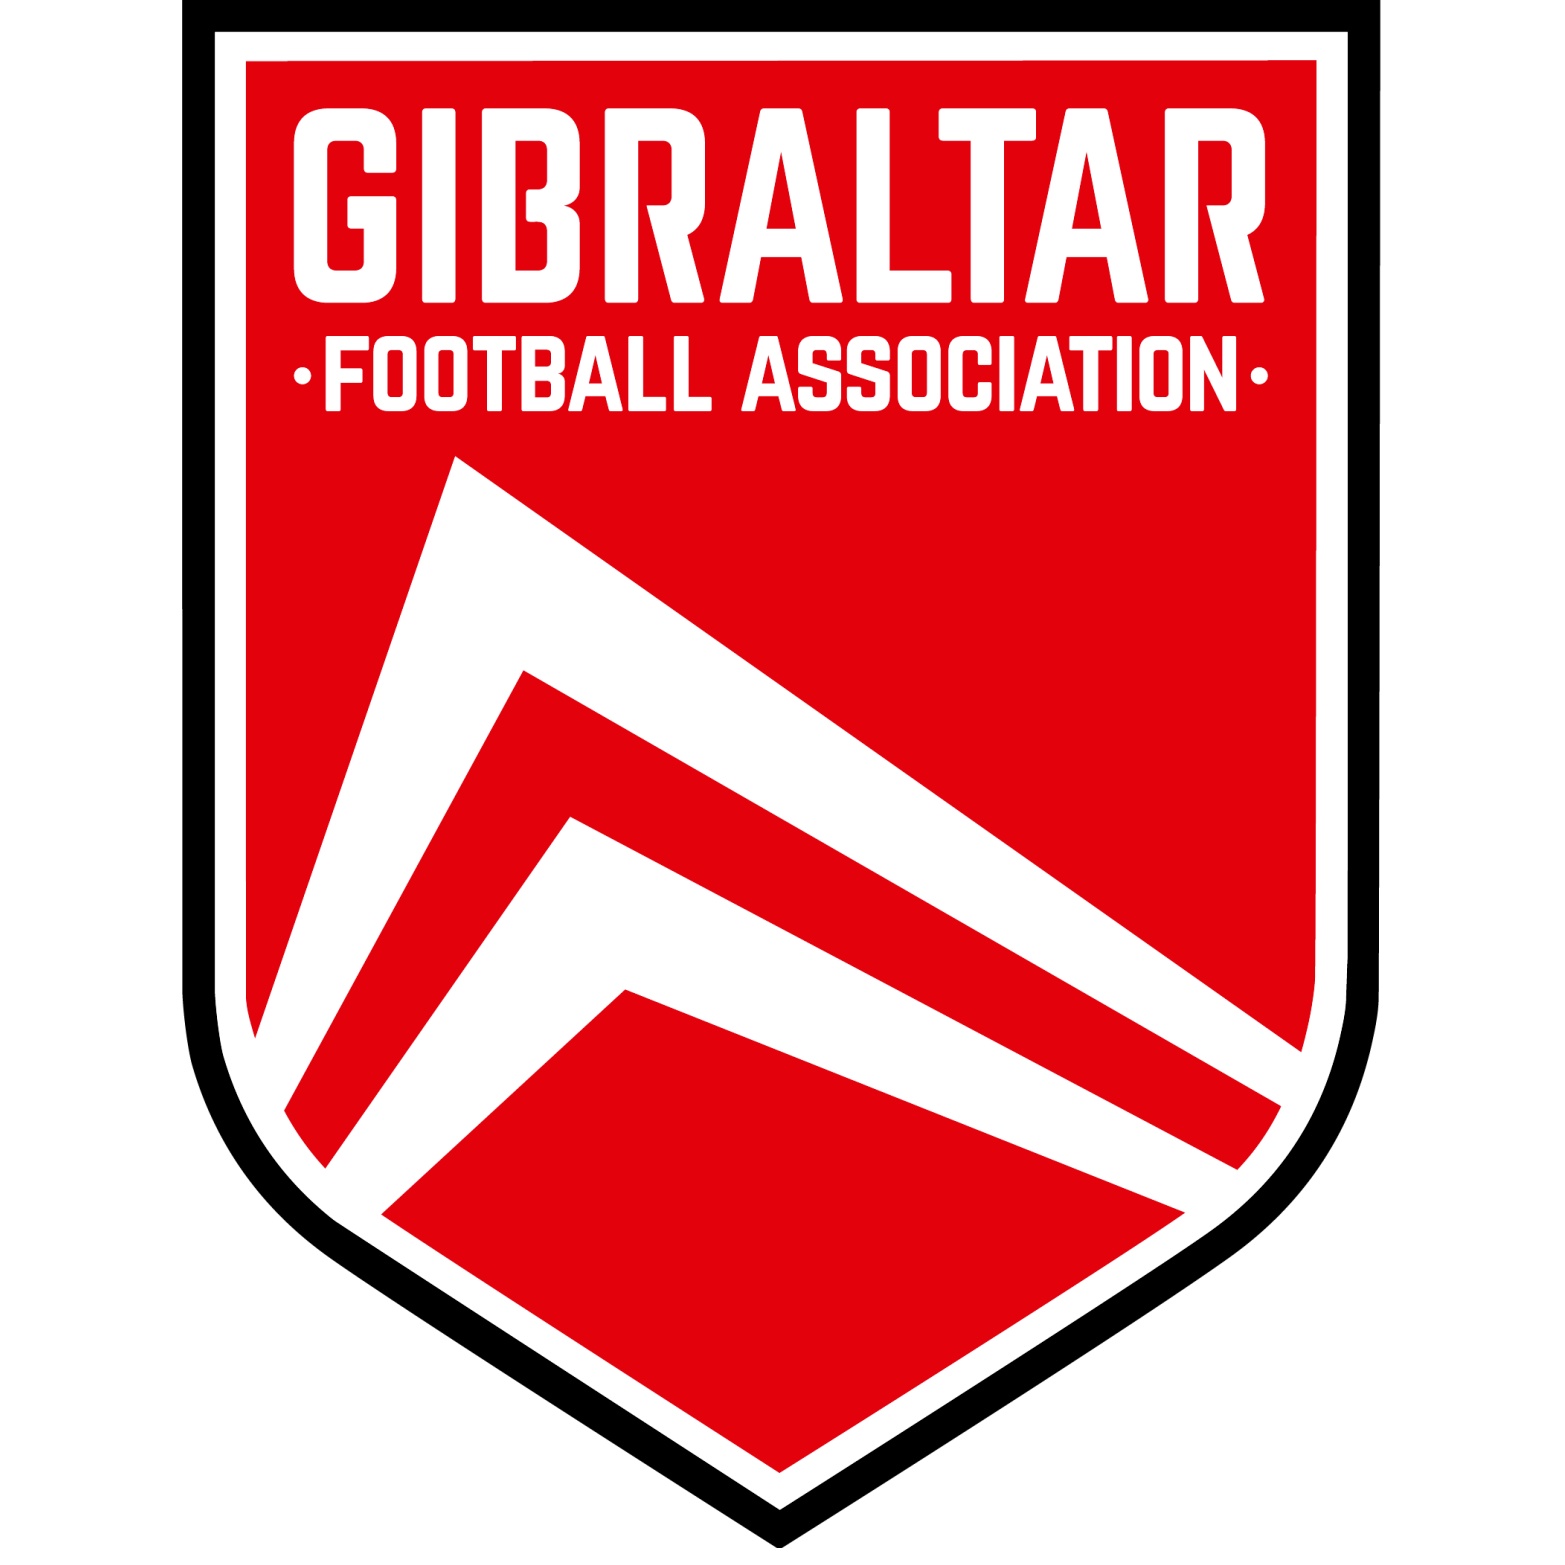 Escudo del Gibraltar Sub 15